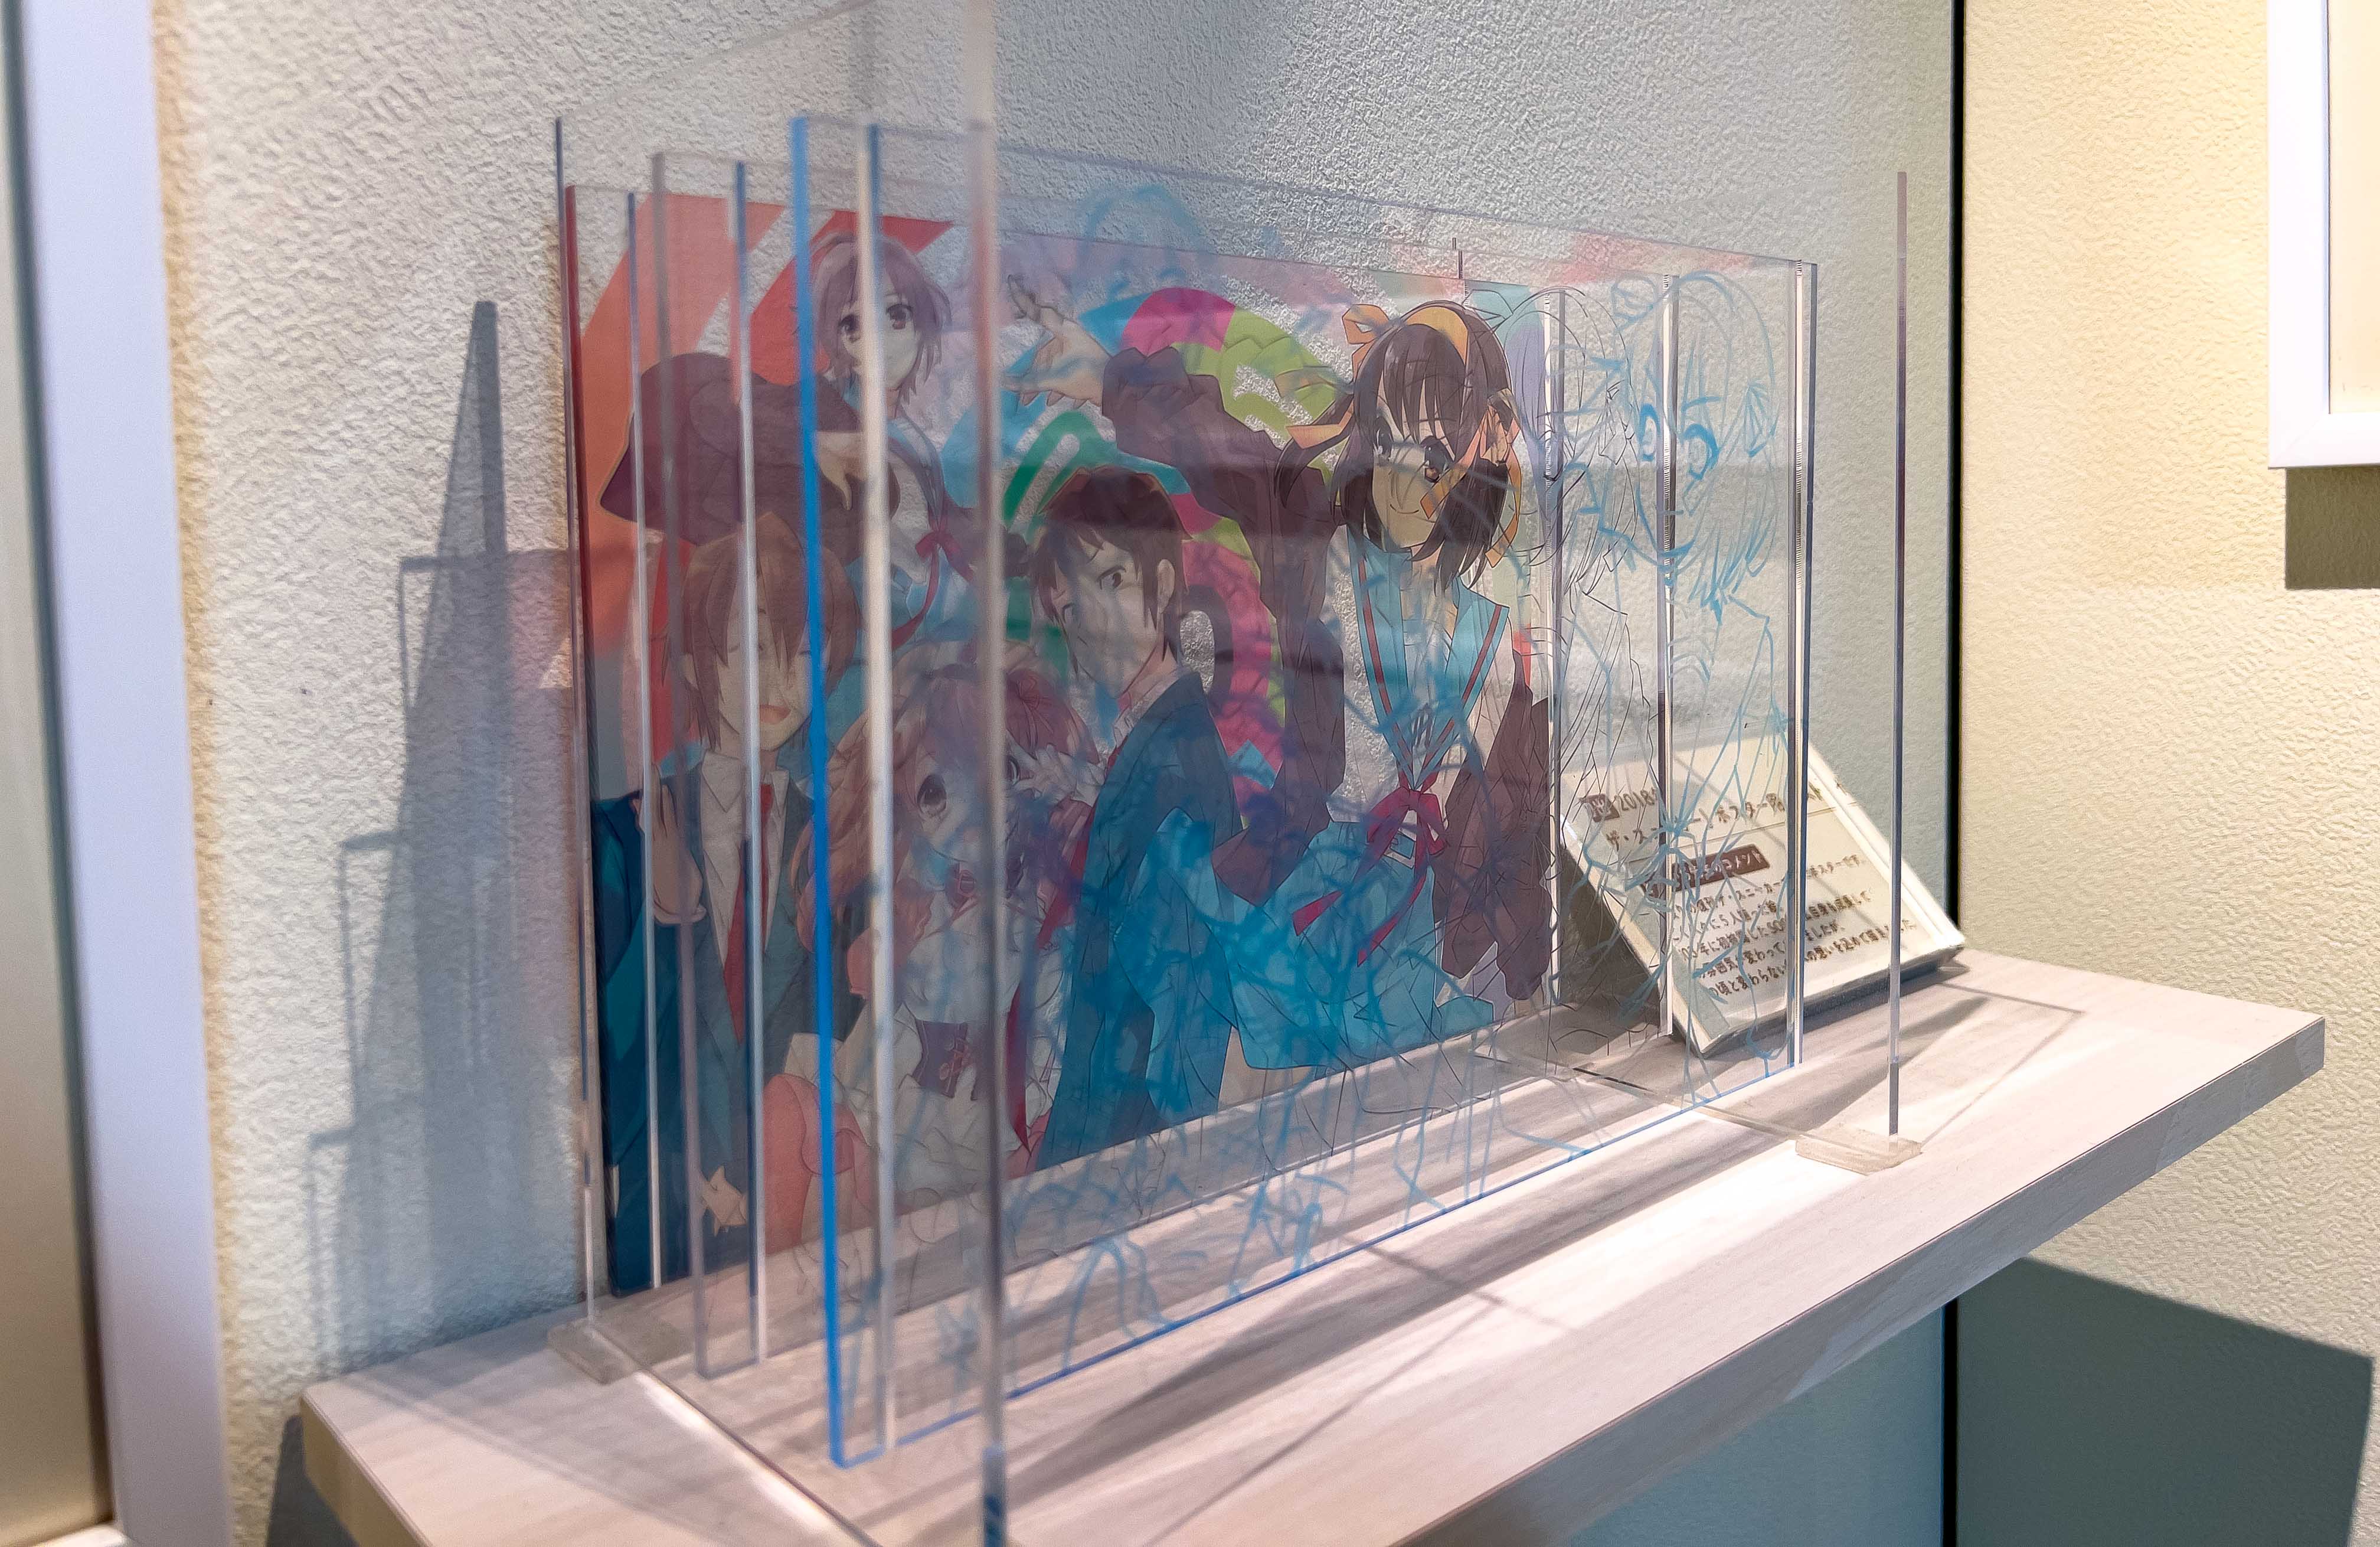 Noizi Ito The Melancholy of Haruhi Suzumiya Artworks Exhibition